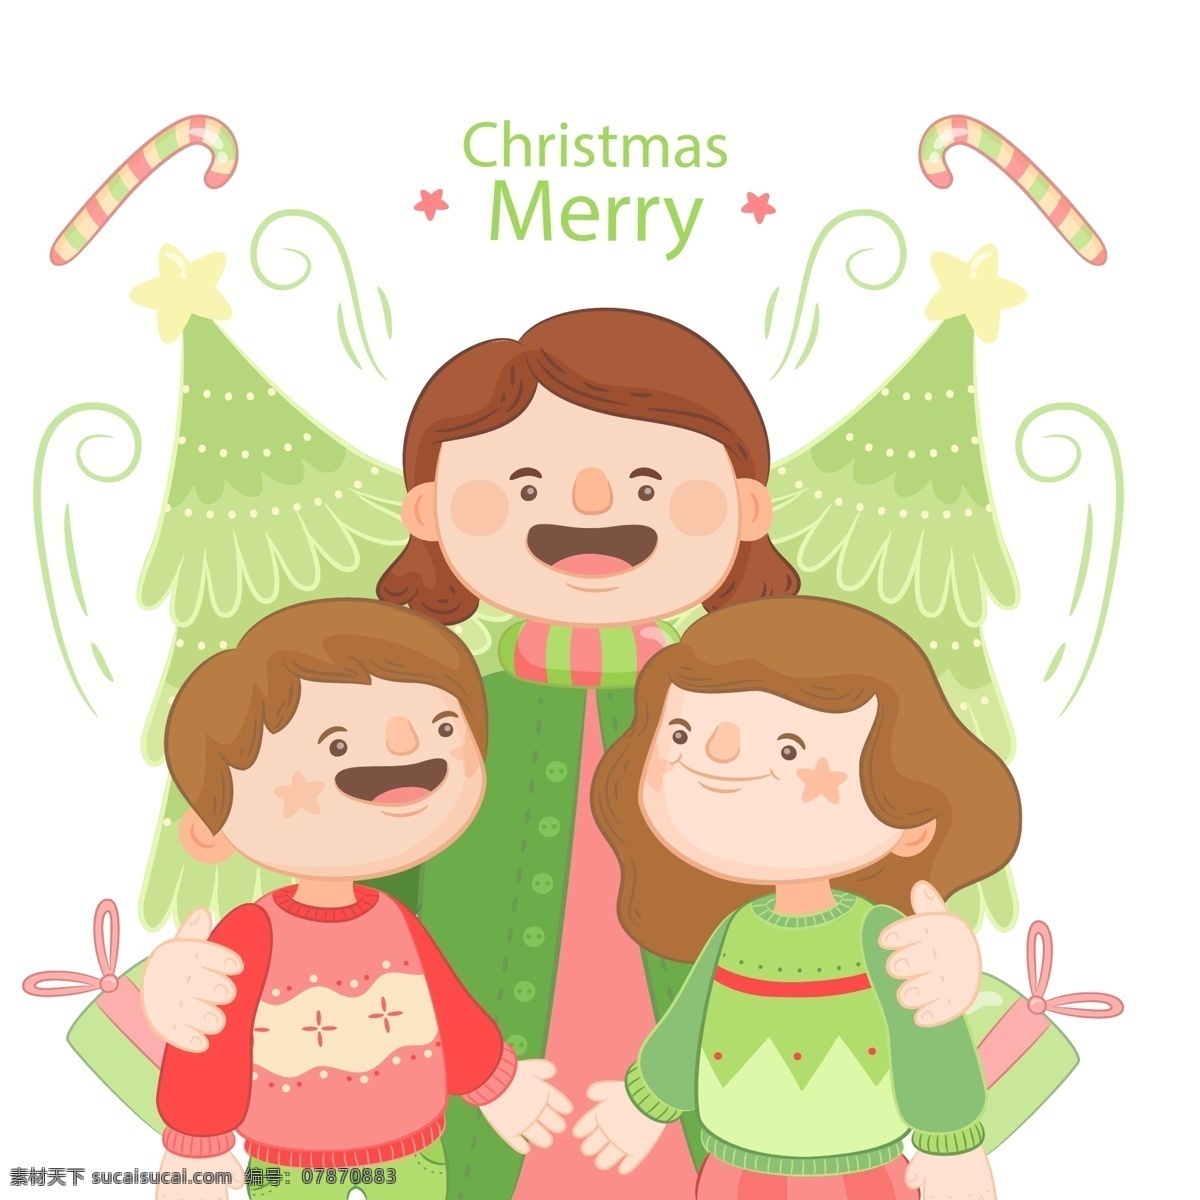 手绘 快乐 家庭 元素 节日素材 卡通人物 人物 圣诞 圣诞节 圣诞素材 圣诞元素 手绘快乐家庭